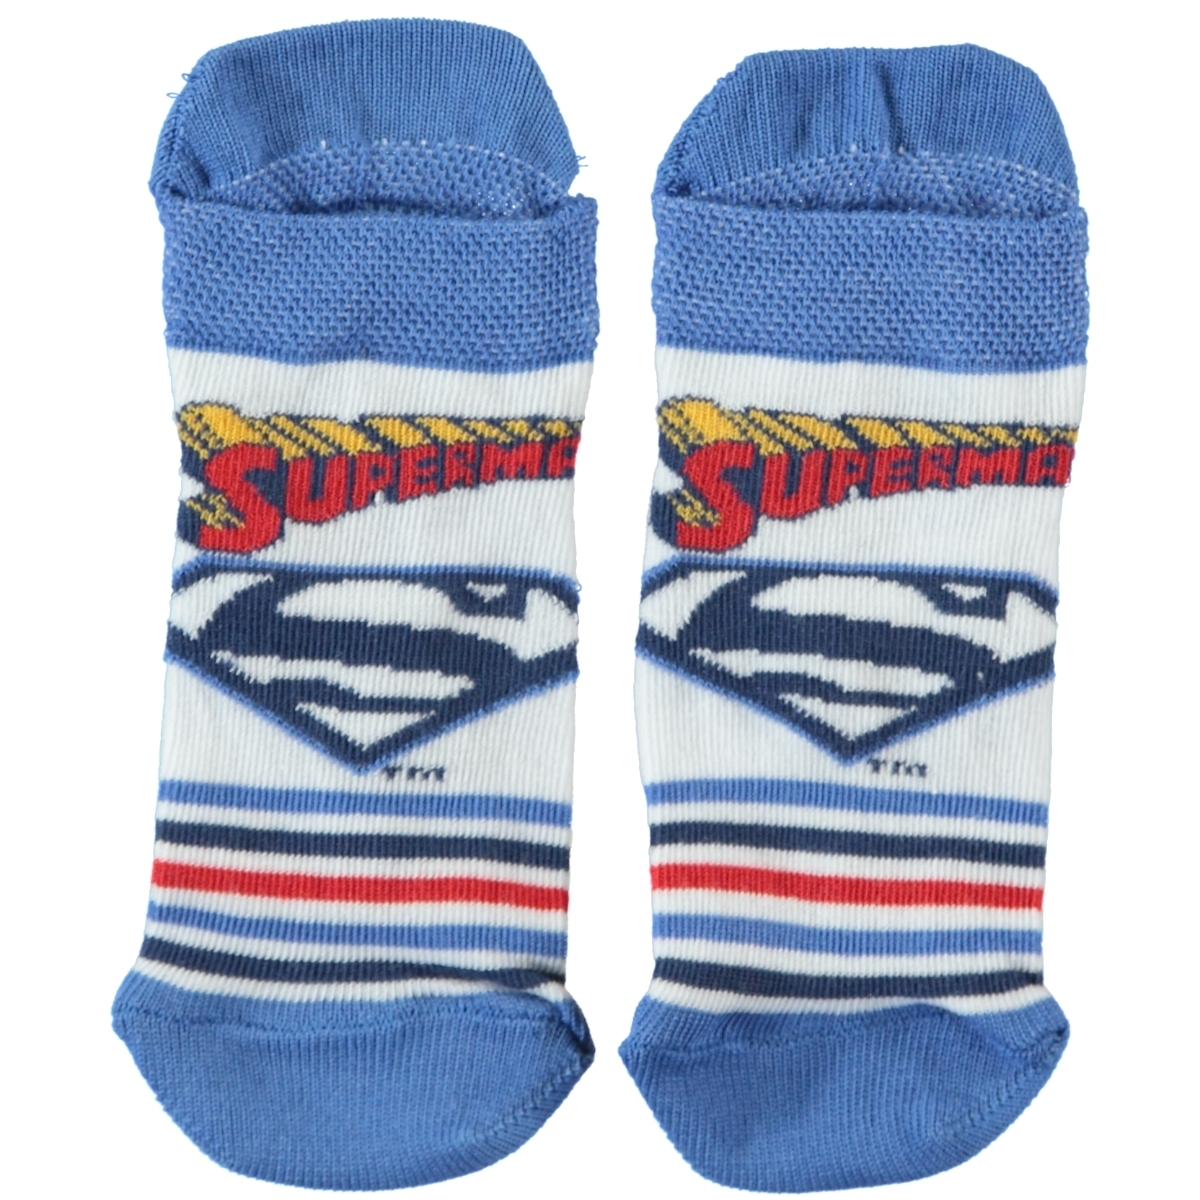 Süperman Erkek Çocuk Çorap 5-9 Yaş Mavi